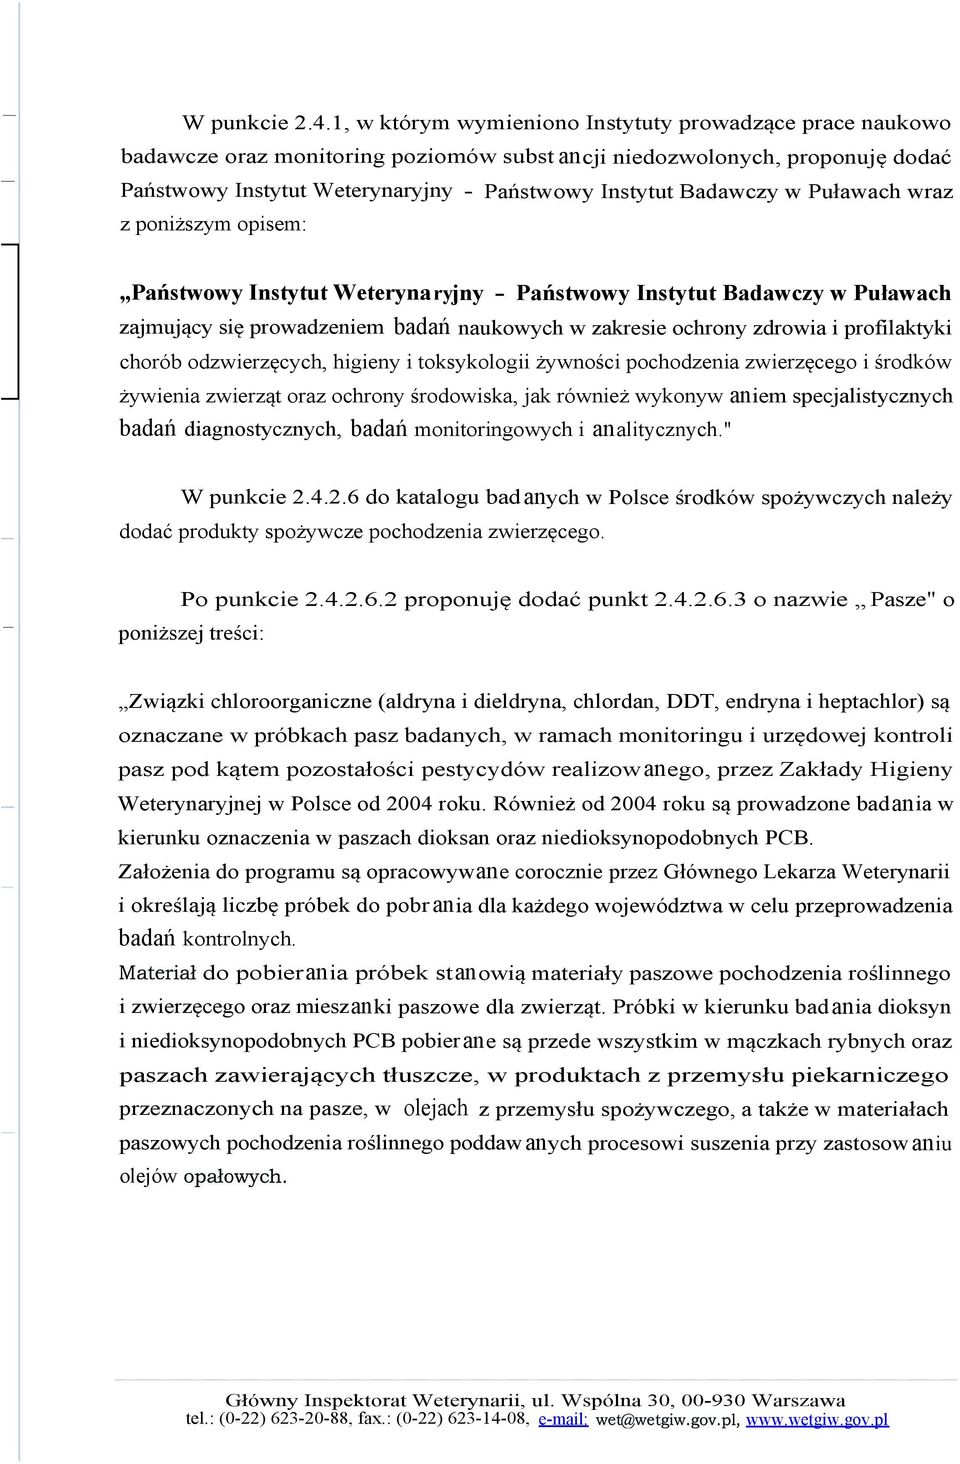 w Puławach wraz z poniższym opisem: Państwowy Instytut Weterynaryjny - Państwowy Instytut Badawczy w Puławach zajmujący się prowadzeniem badań naukowych w zakresie ochrony zdrowia i profilaktyki